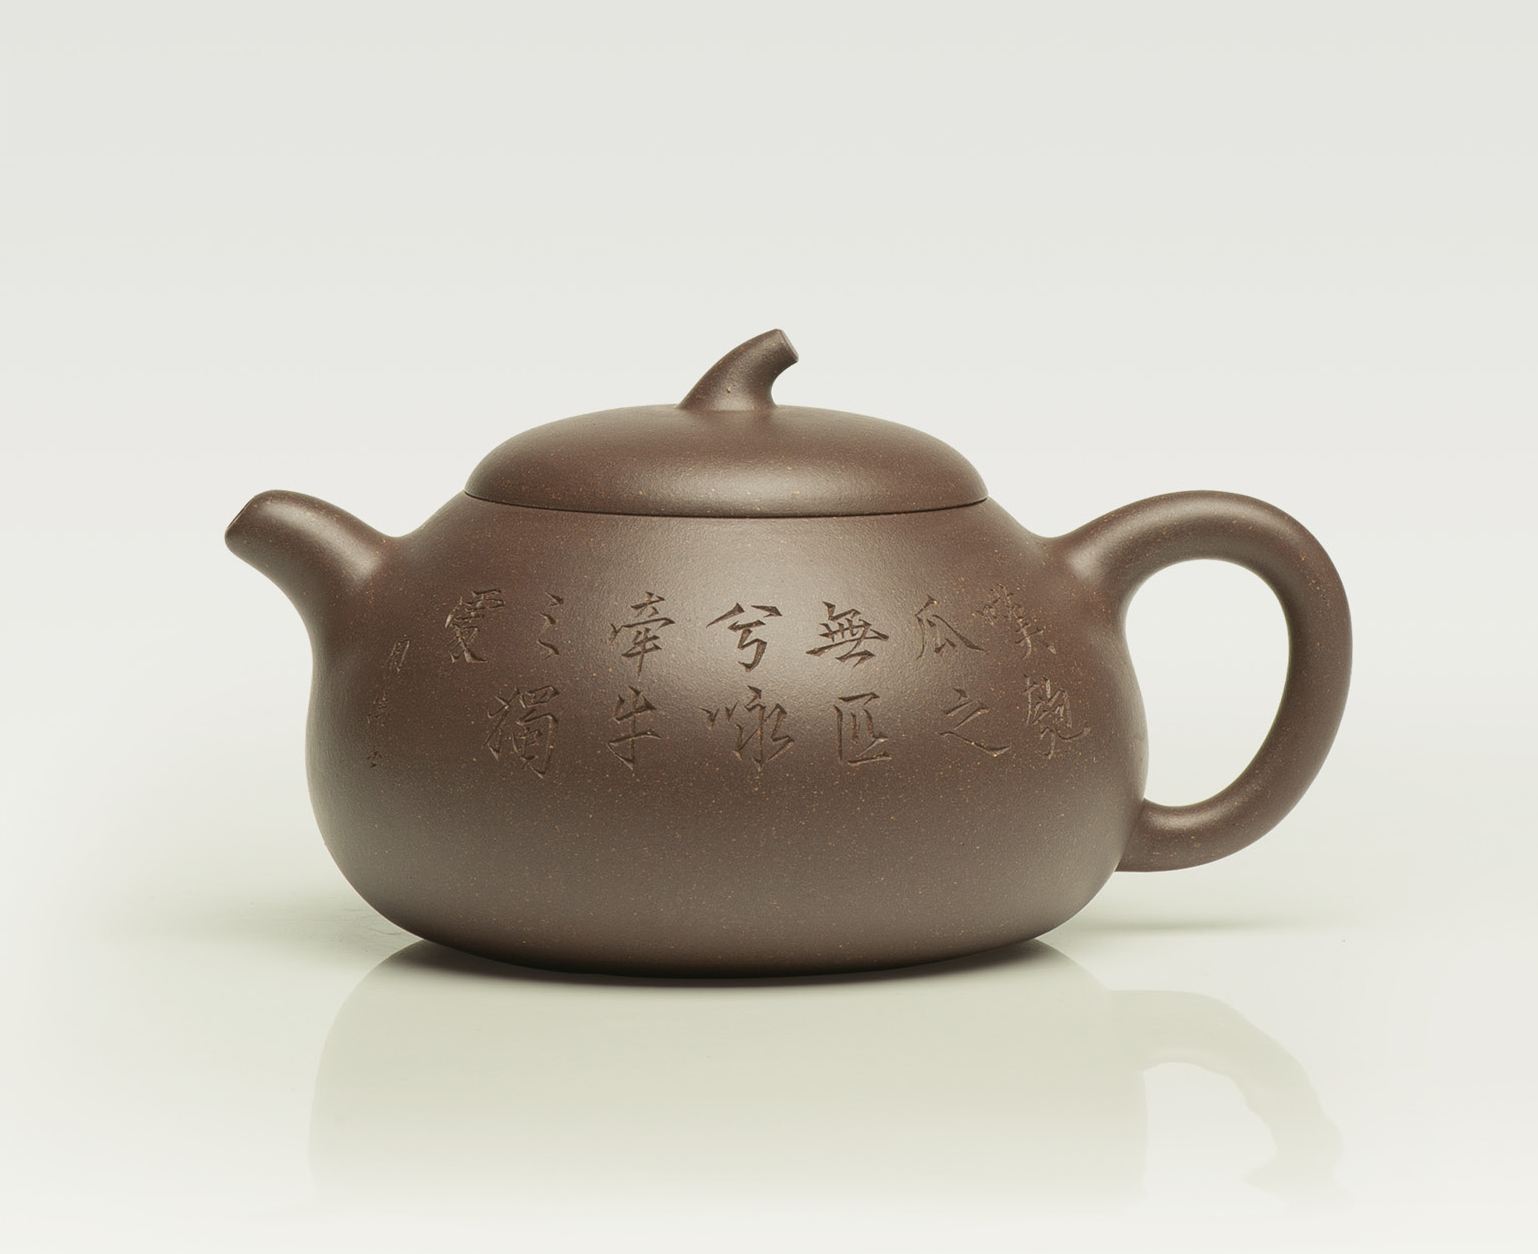 用紫砂壶喝茶有益健康补充人体所需的微量元素